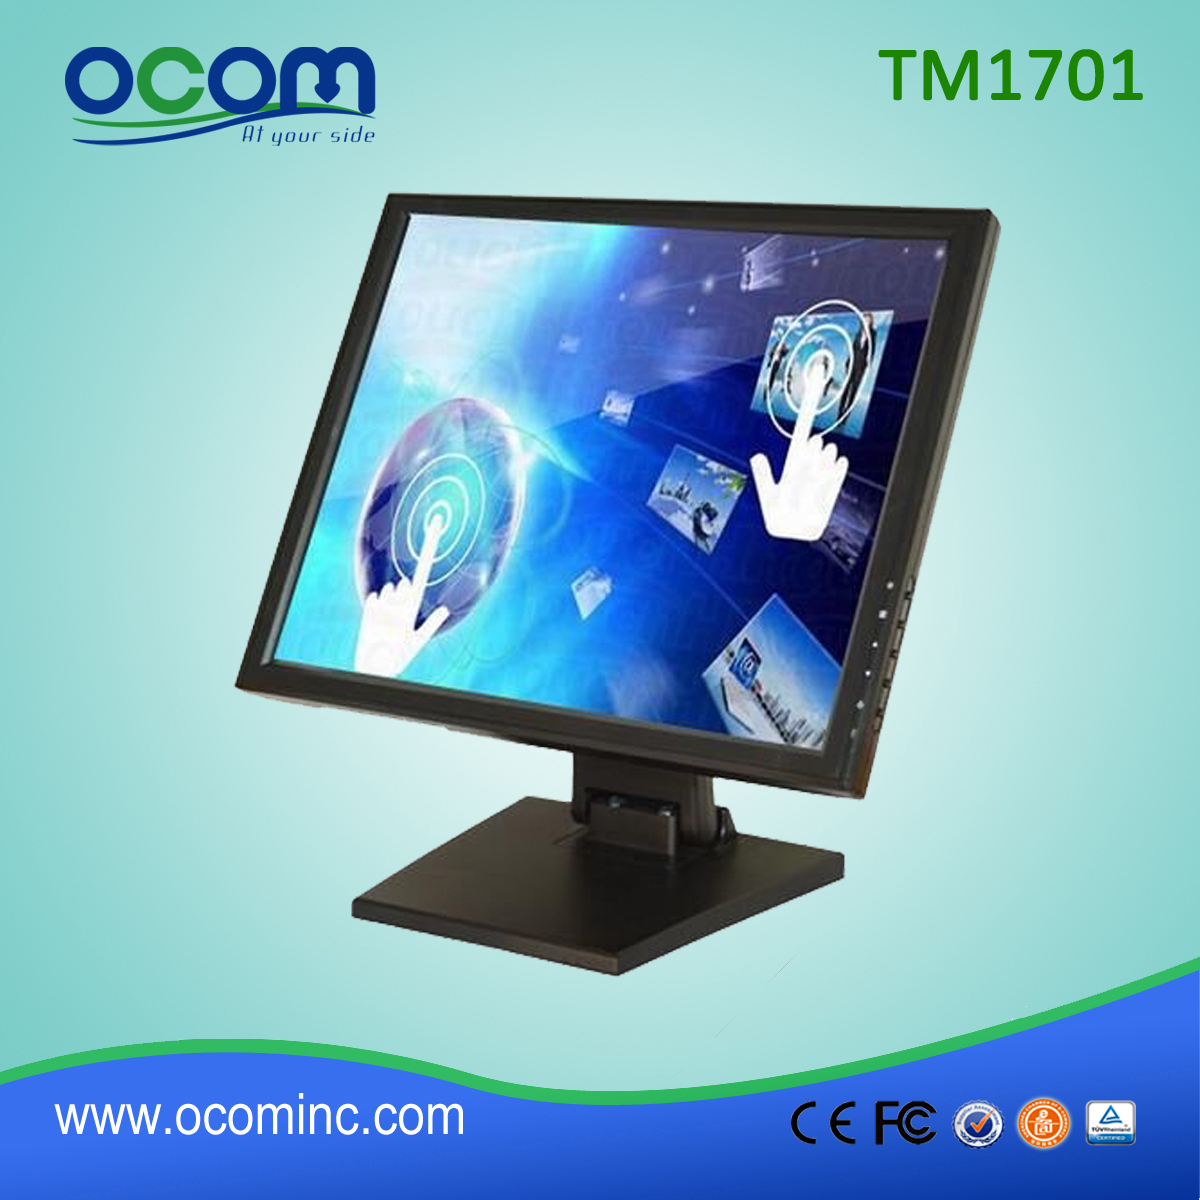 TM1701 monitor LCD de pantalla táctil POS de 17 pulgadas